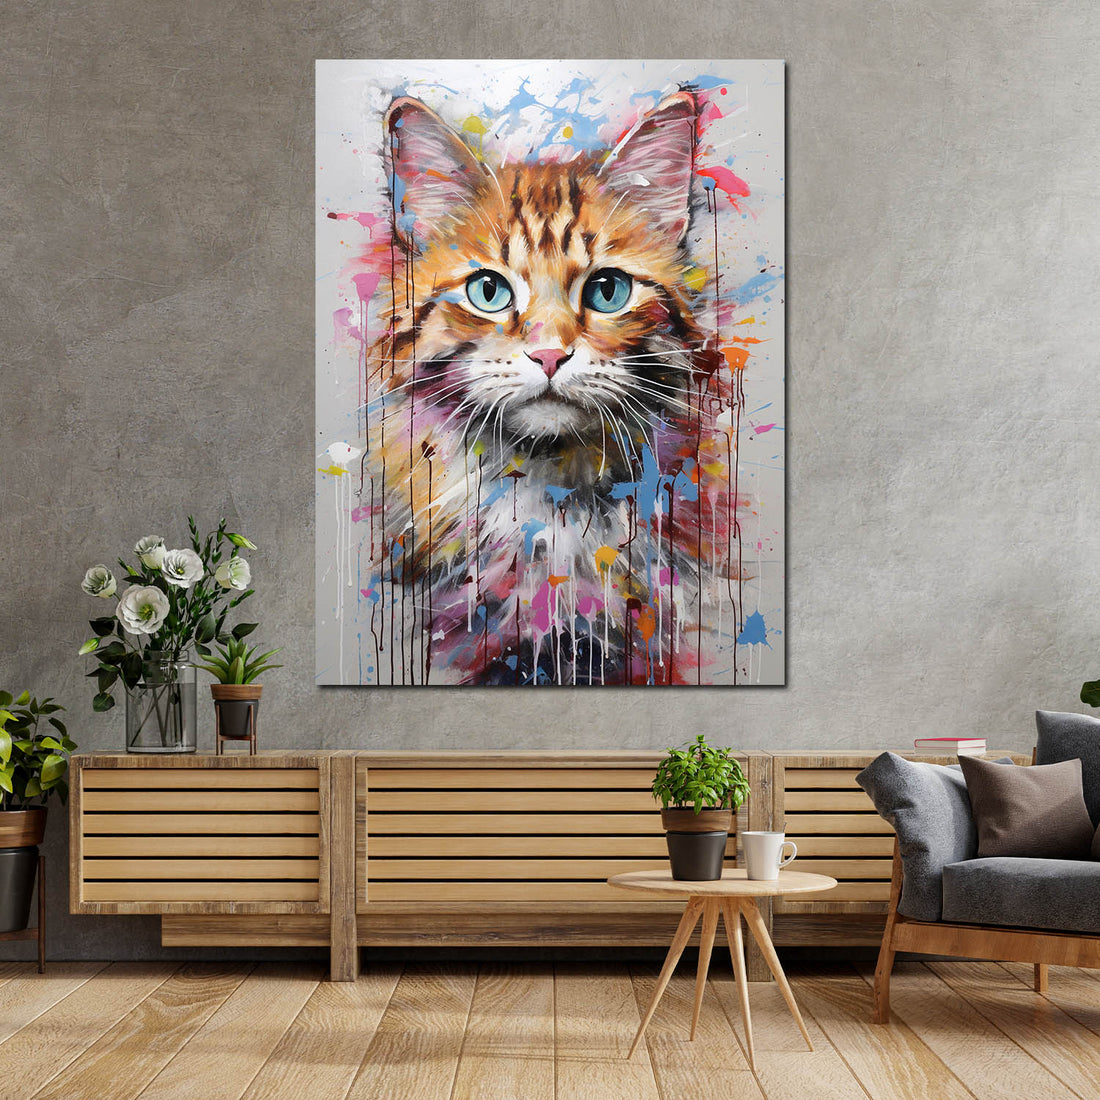 Wandbild süße Katze abstrakt splash